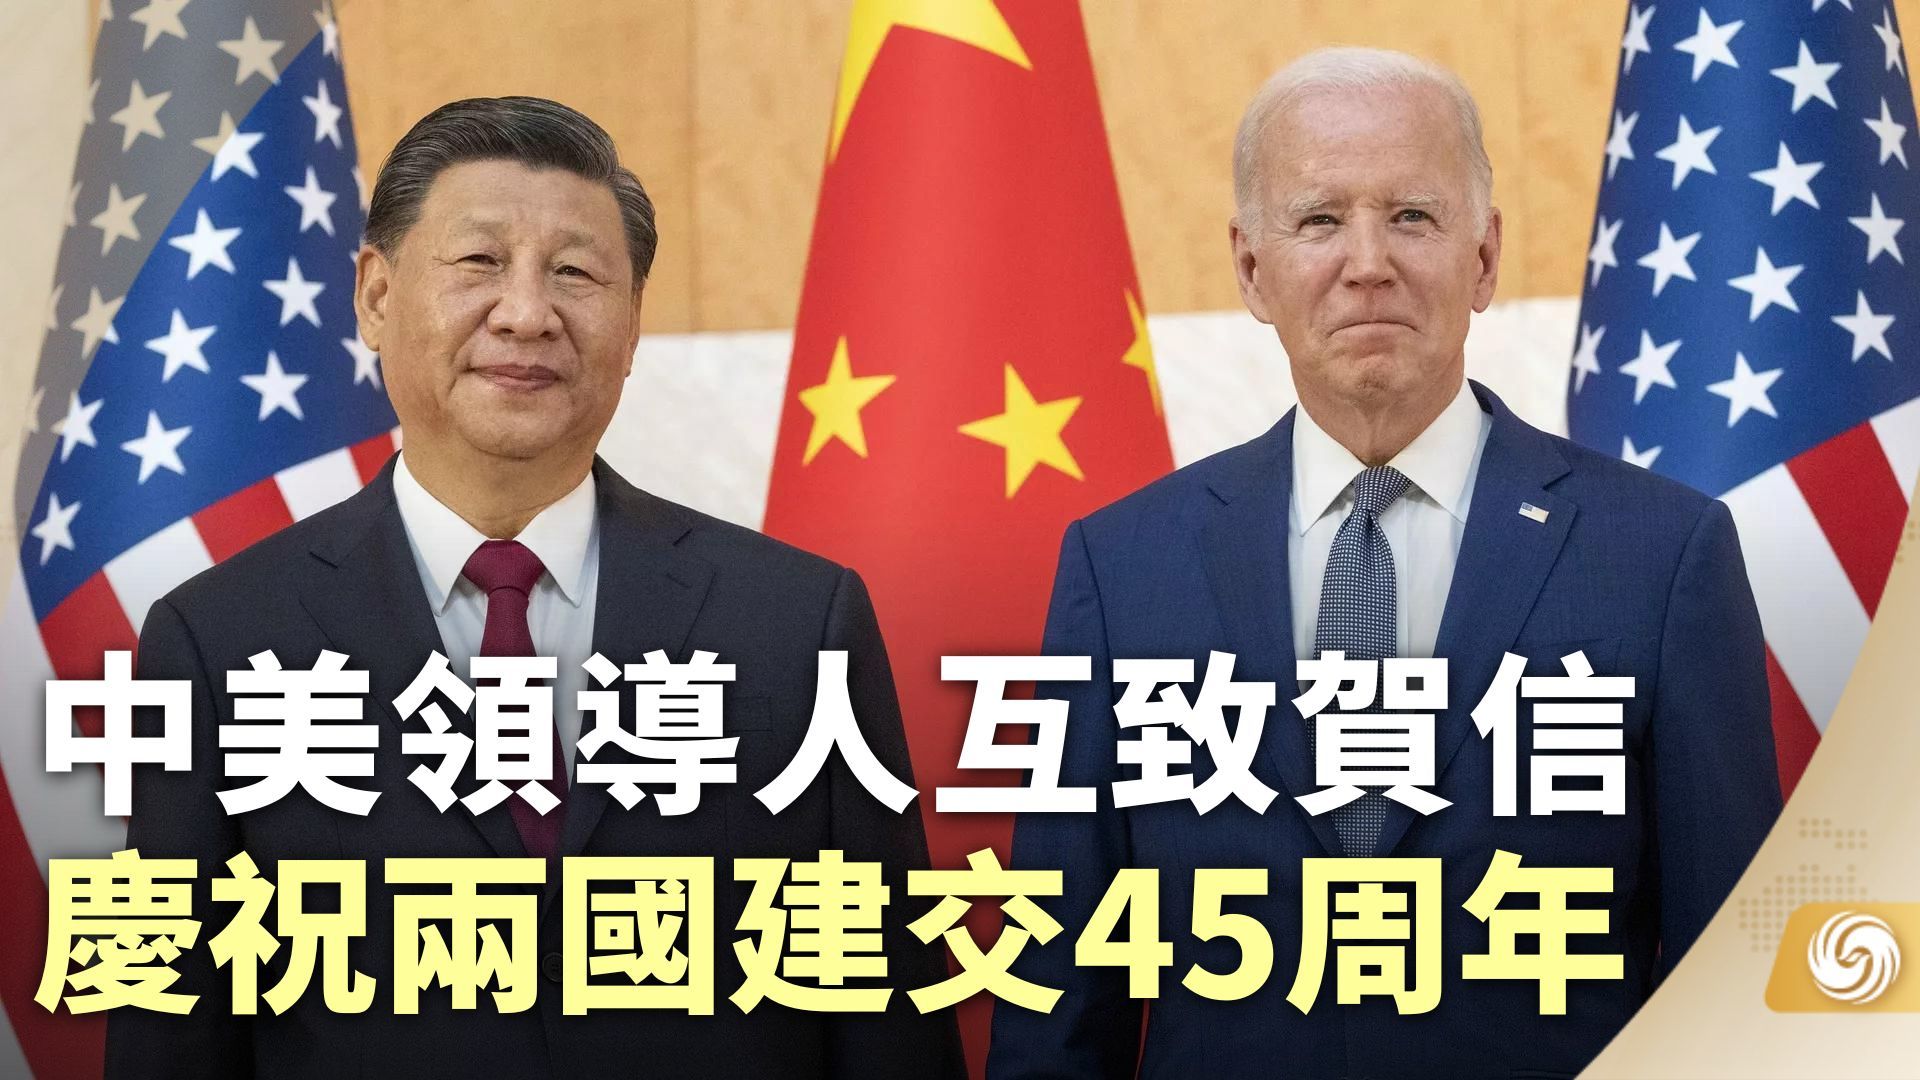 中美领导人互致贺信 庆祝两国建交45周年